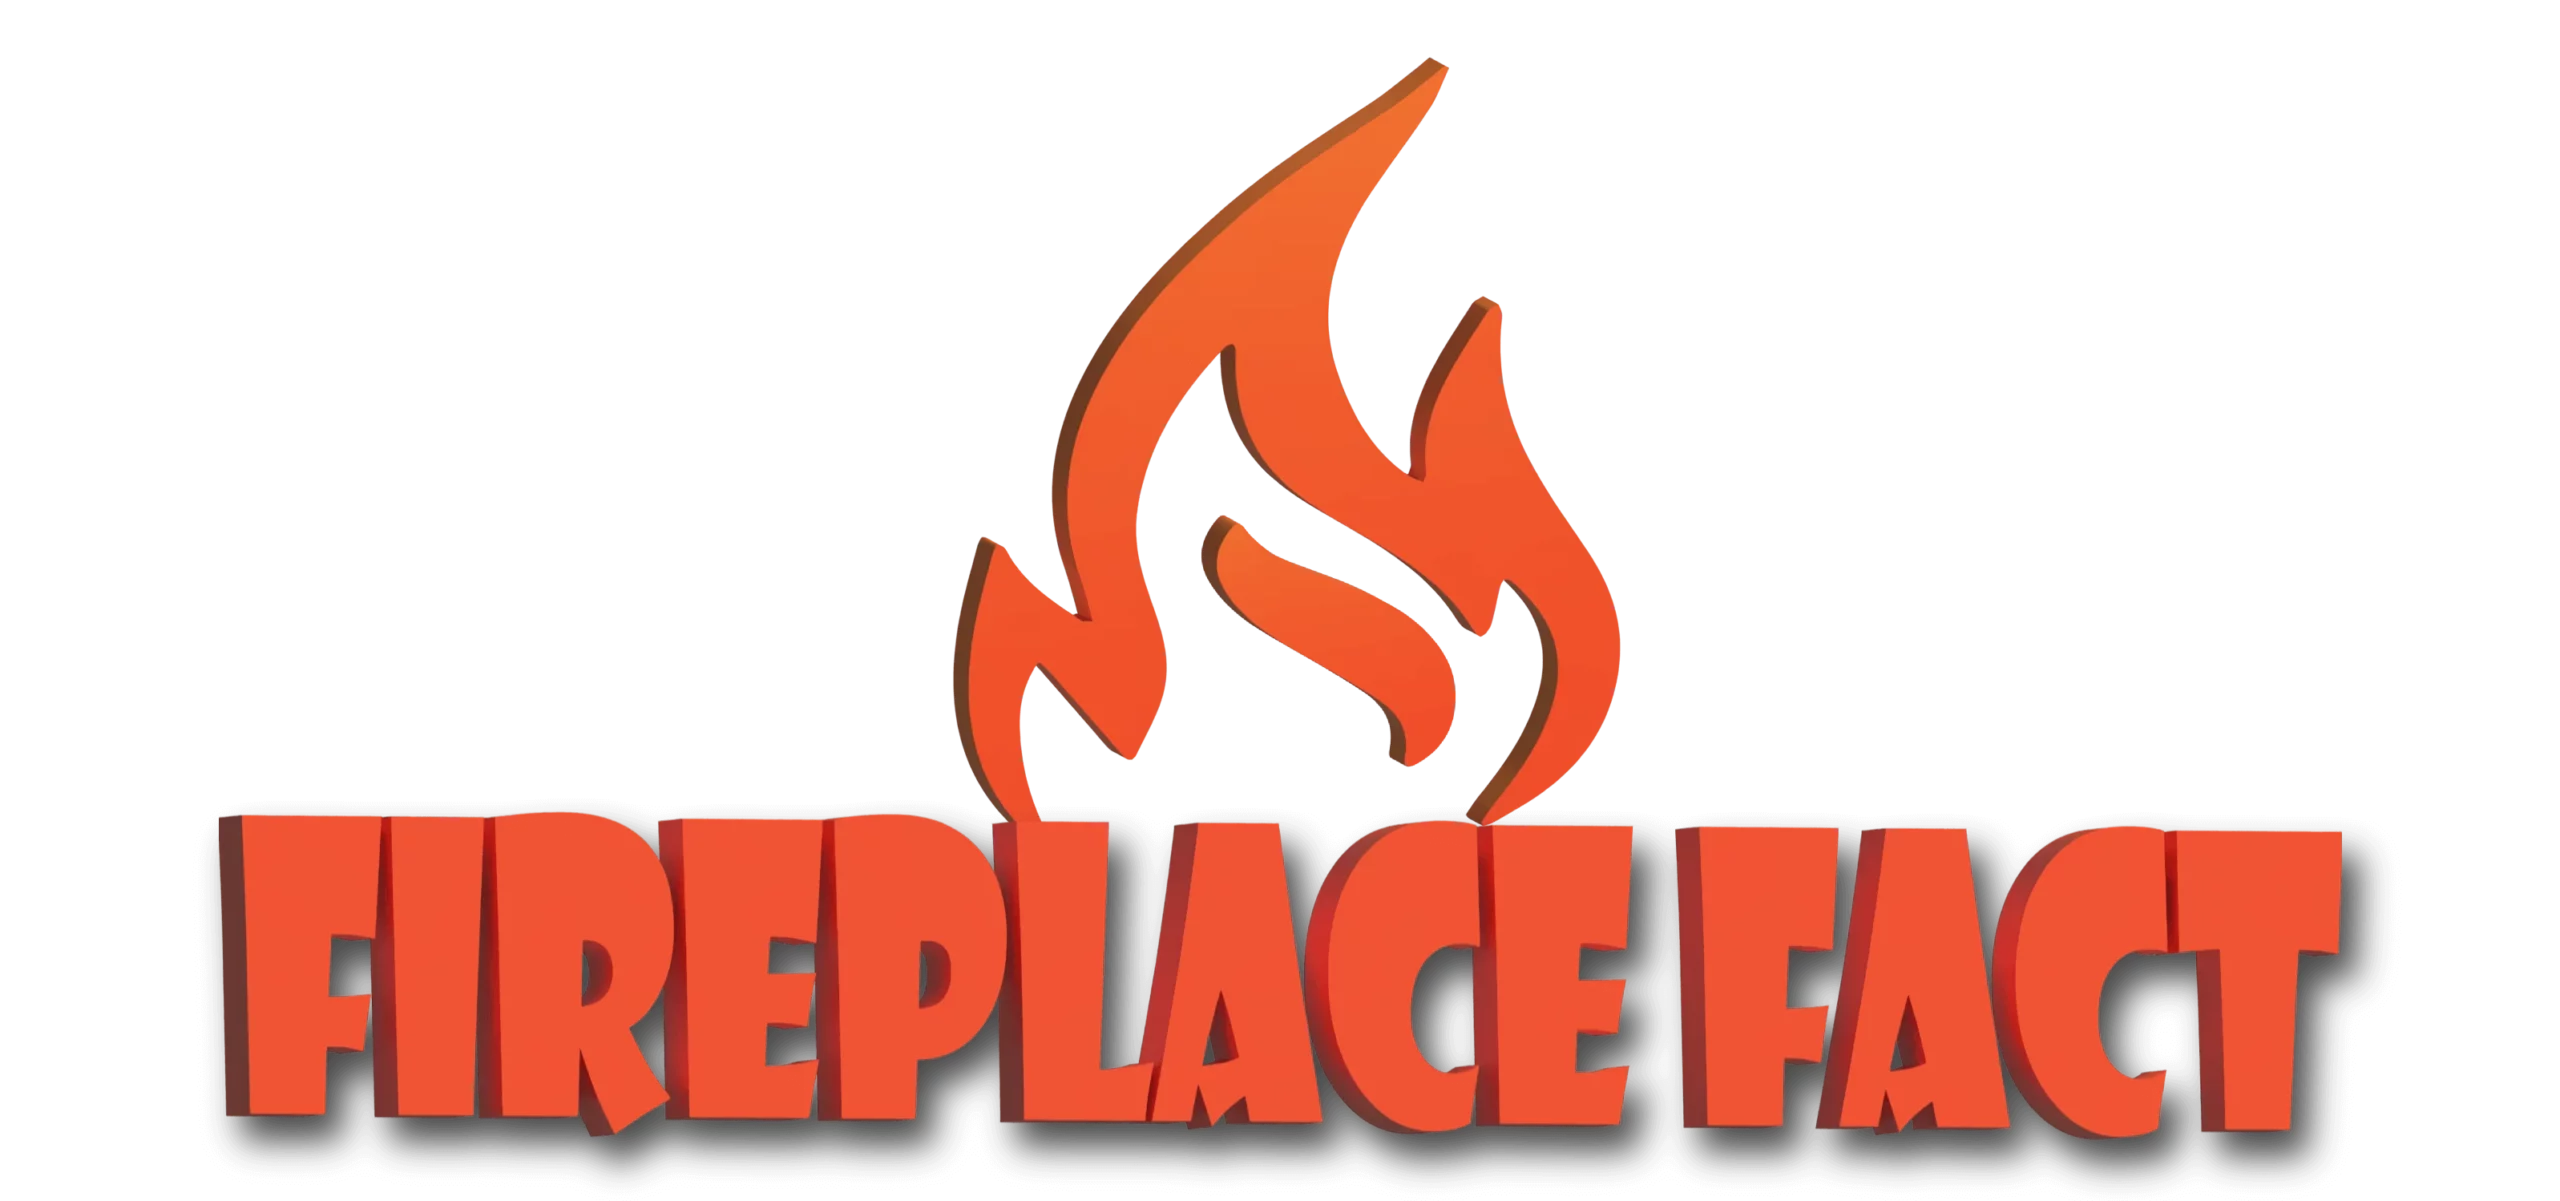 Fireplace Fact